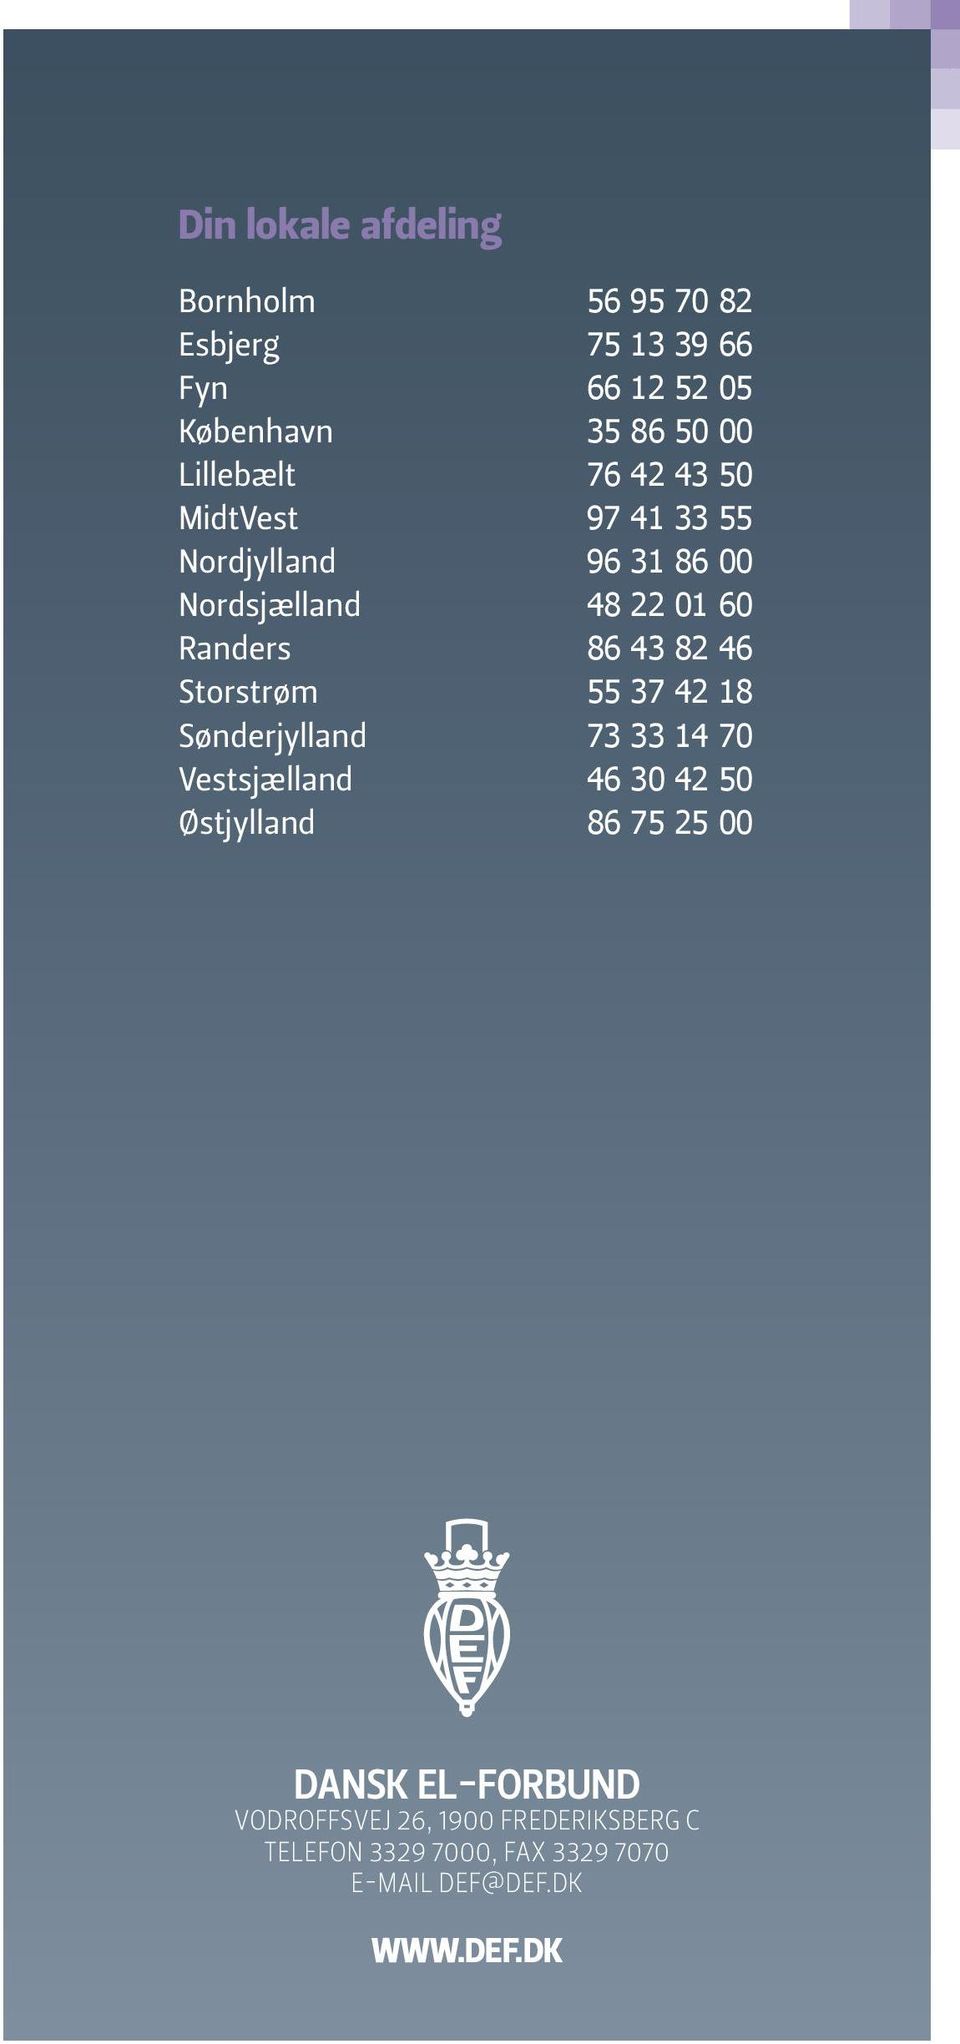 82 46 Storstrøm 55 37 42 18 Sønderjylland 73 33 14 70 Vestsjælland 46 30 42 50 Østjylland 86 75 25 00